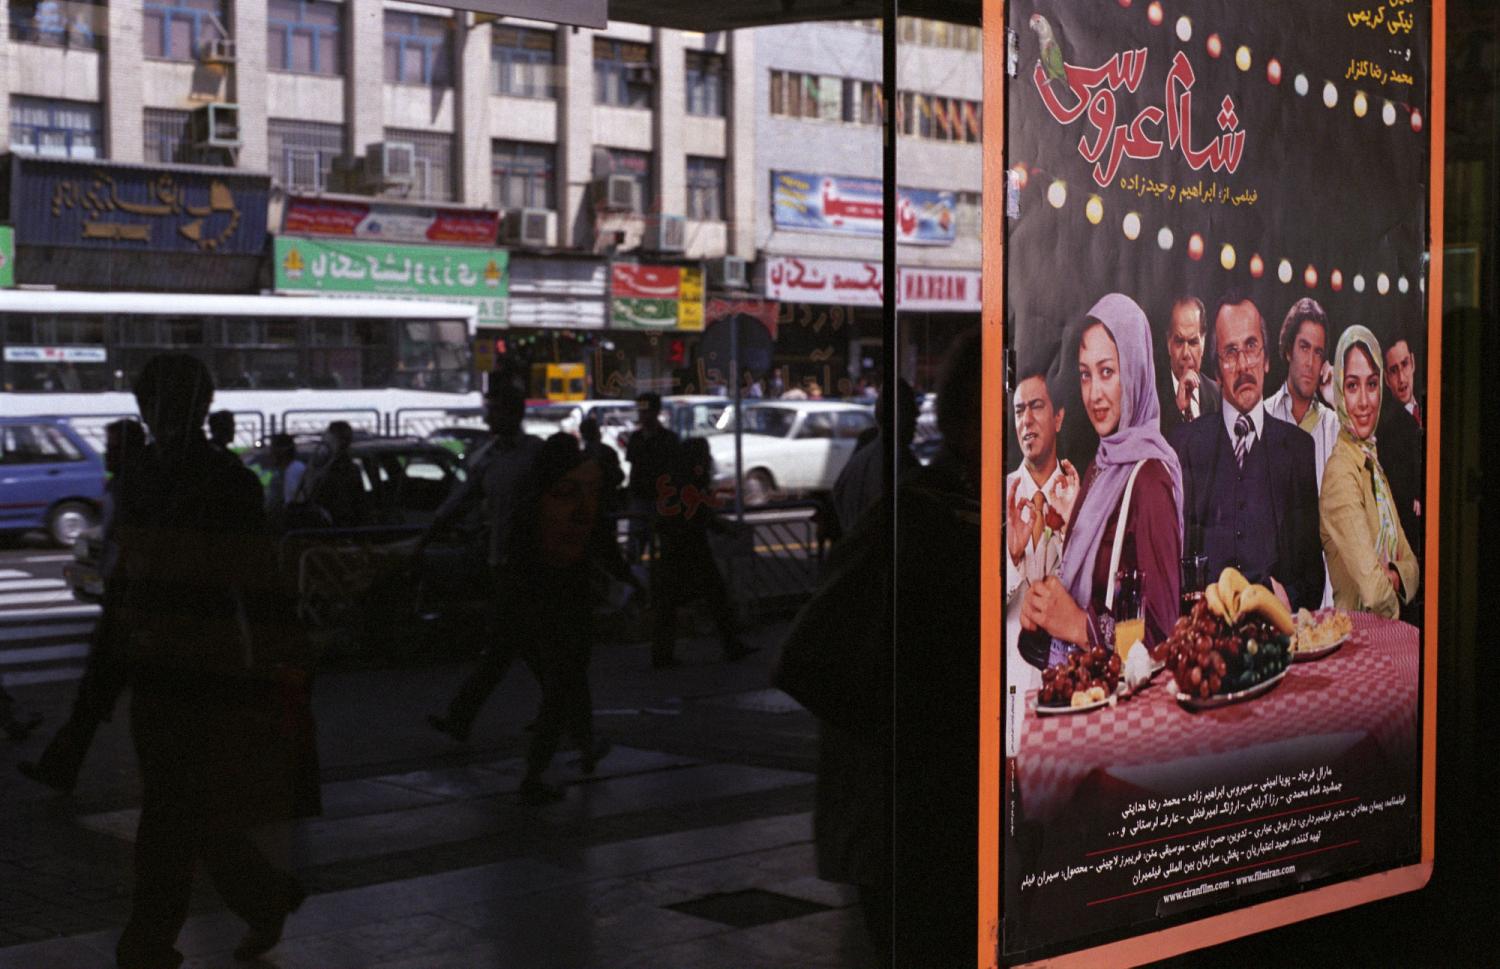 A la porte d’un cinéma d'Enqelab à Téhéran, l’affiche d’une comédie avec Niki Karimi, et le reflet des passants. Téhéran, Iran, septembre 2006.